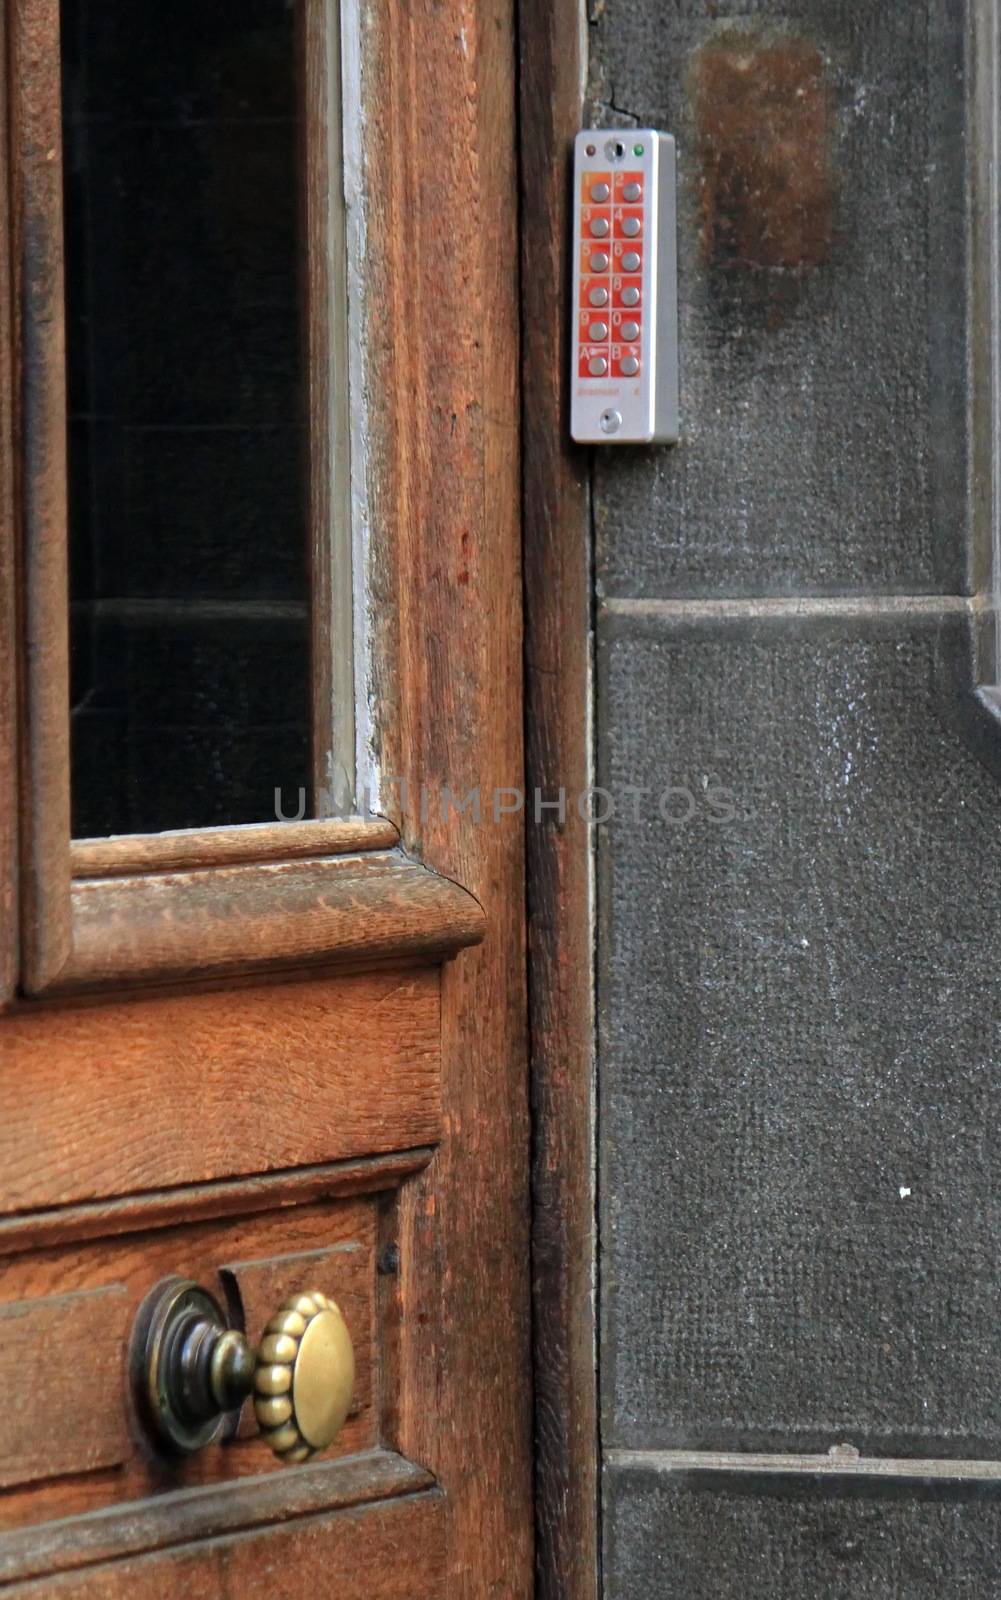 Locked door with digital code by Elenaphotos21